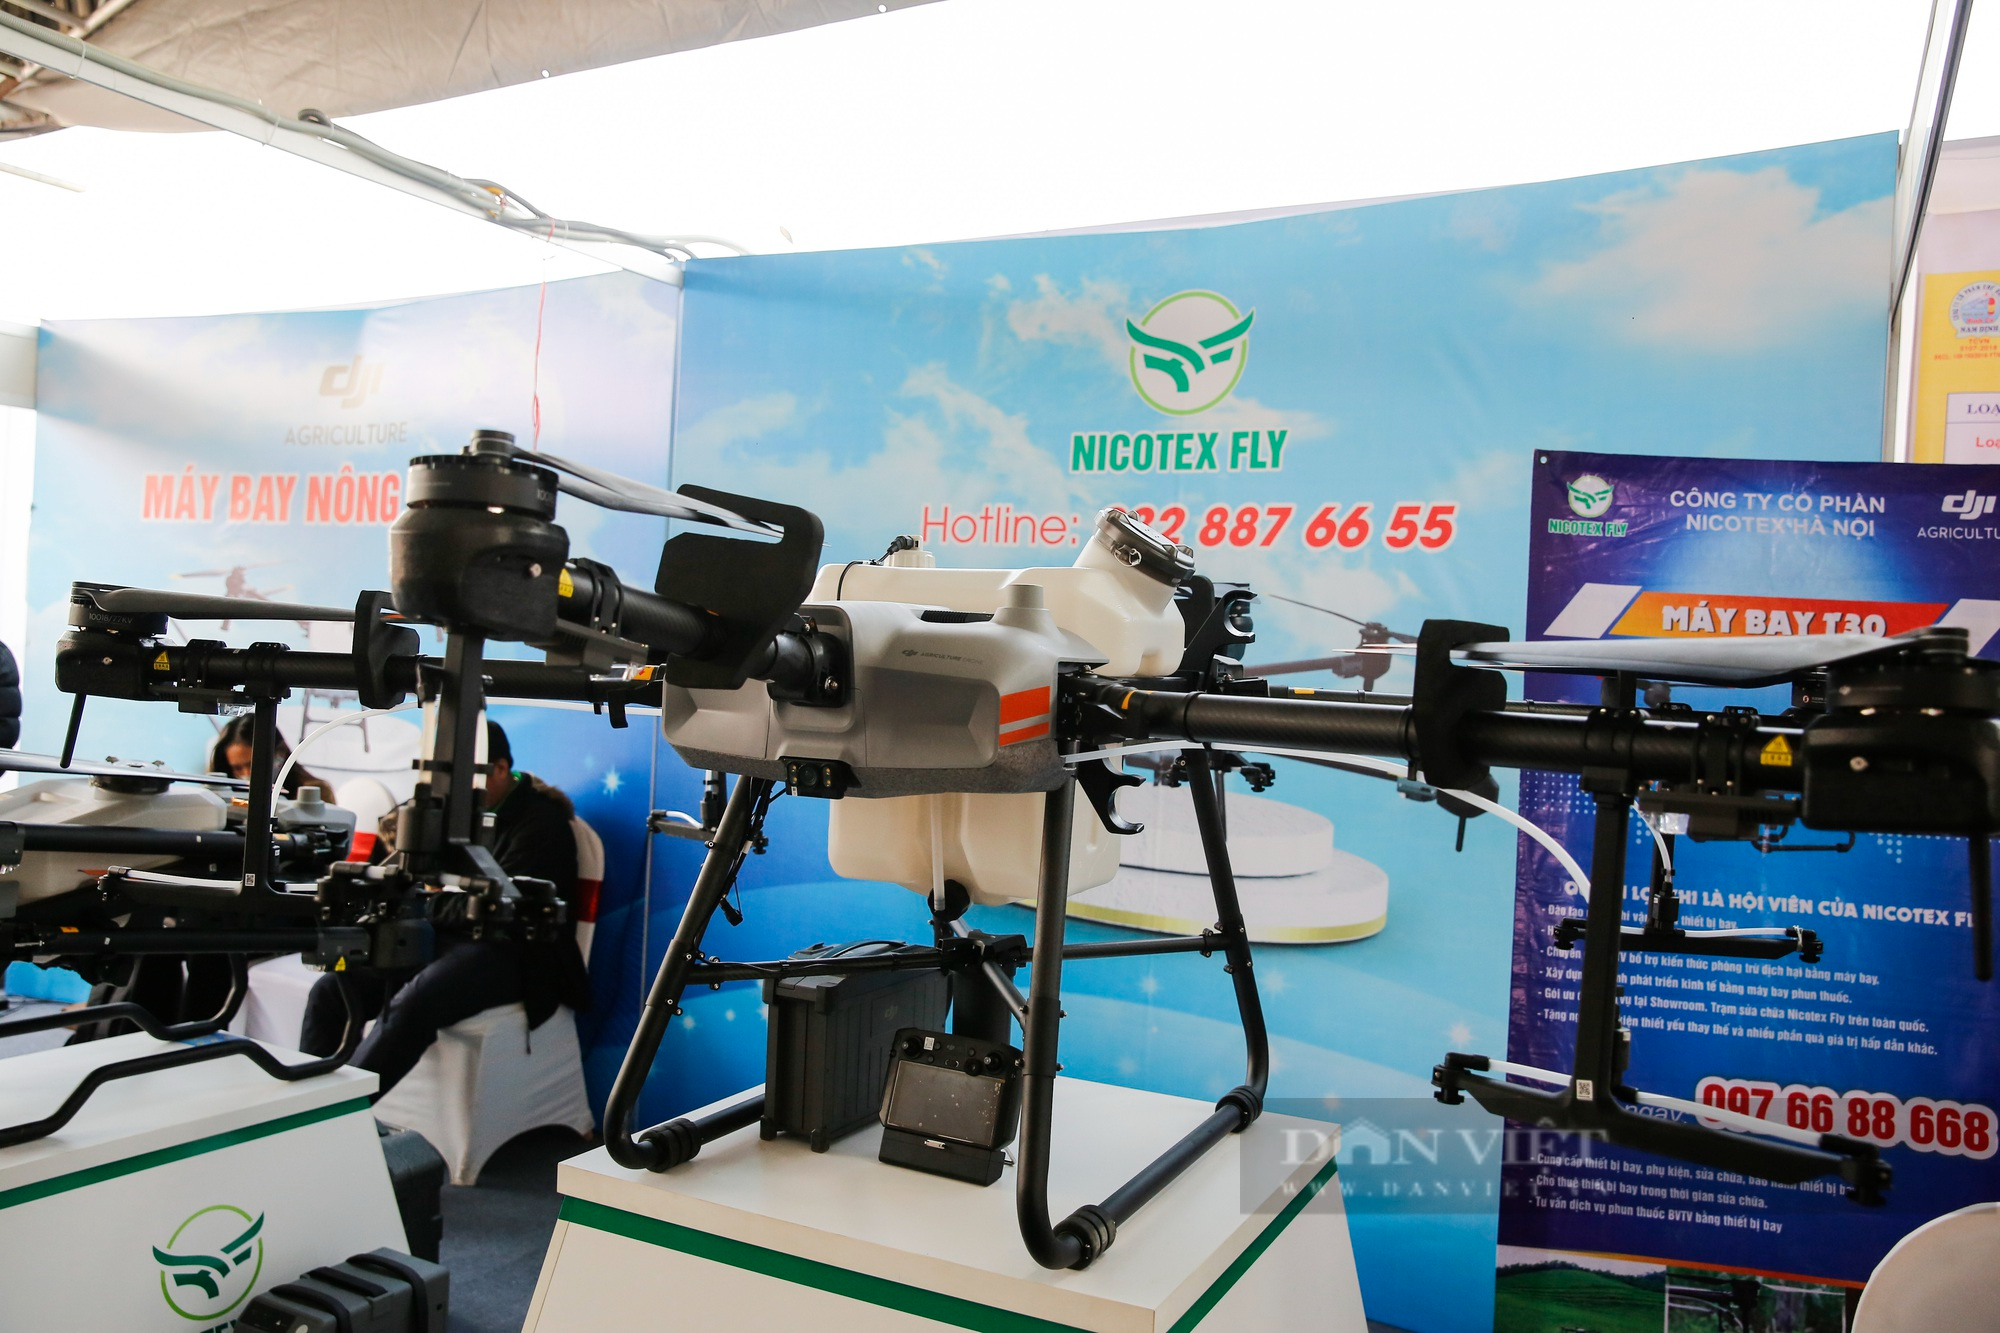 Cận cảnh máy bay nông nghiệp hỗ trợ phun thuốc hiện đại giá lên tới 400 triệu đồng  - Ảnh 2.